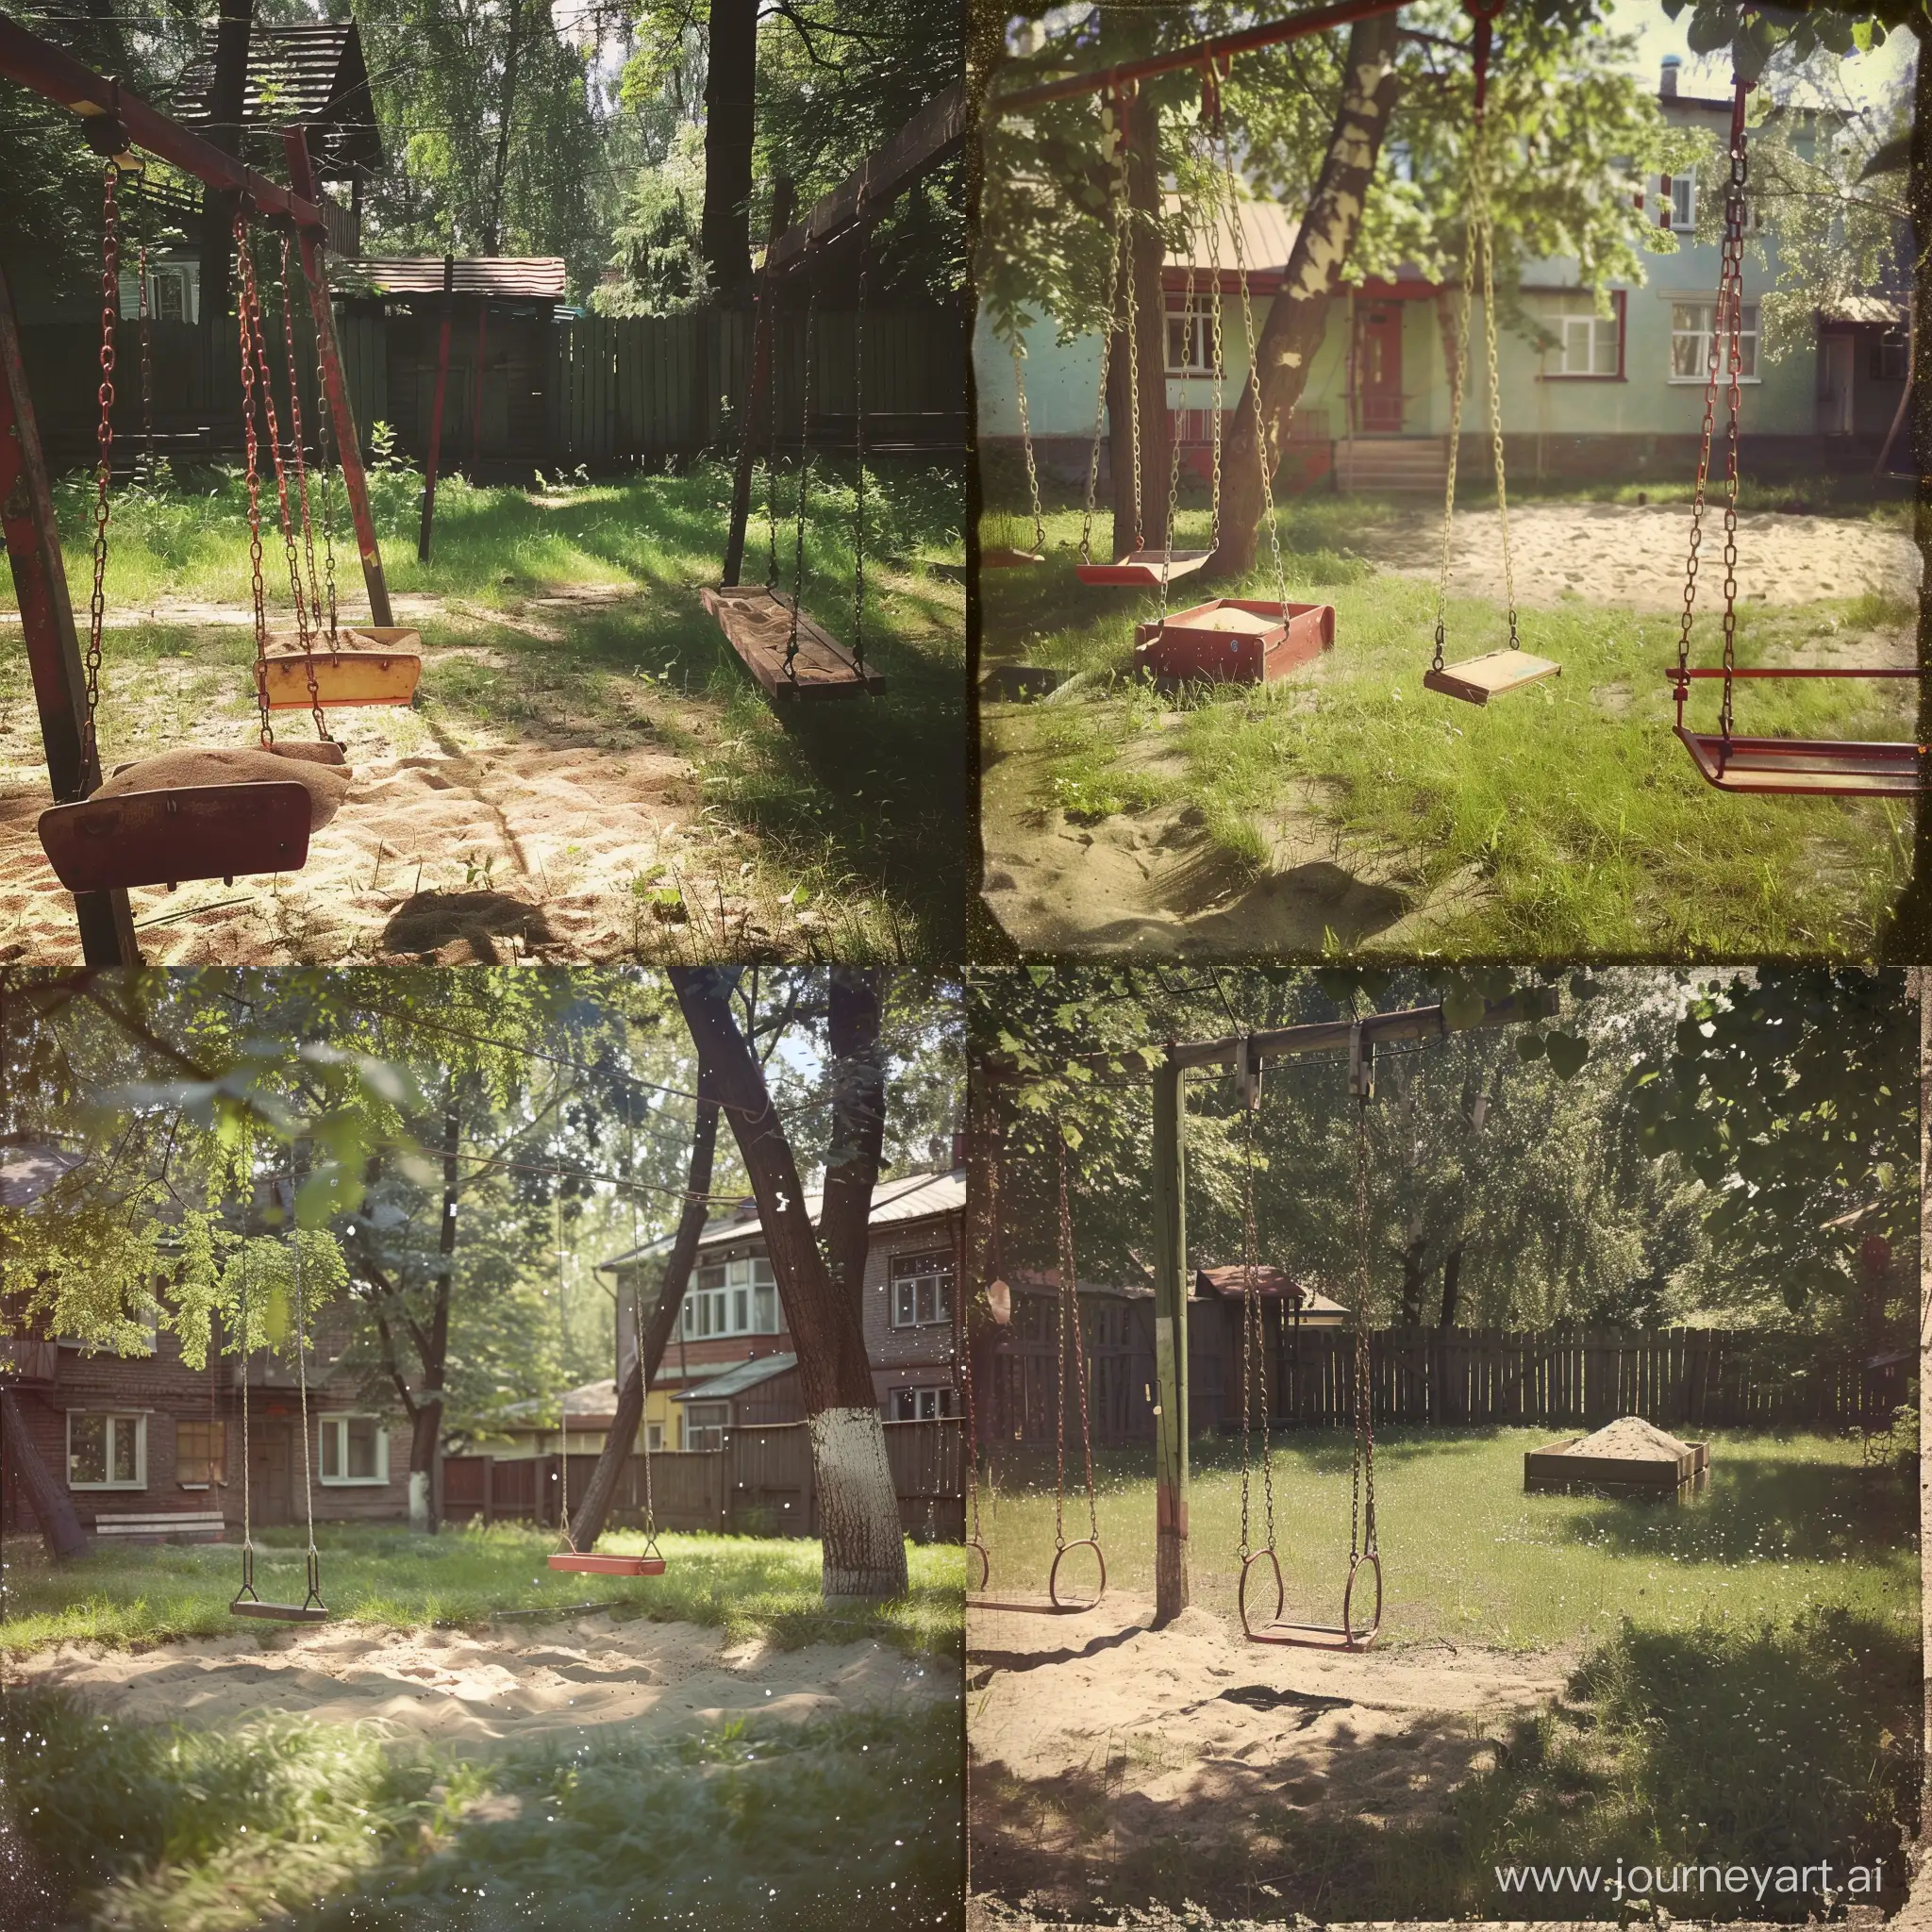 Лето, советский двор, качели, песочница, трава, обработка в стиле ностальгии